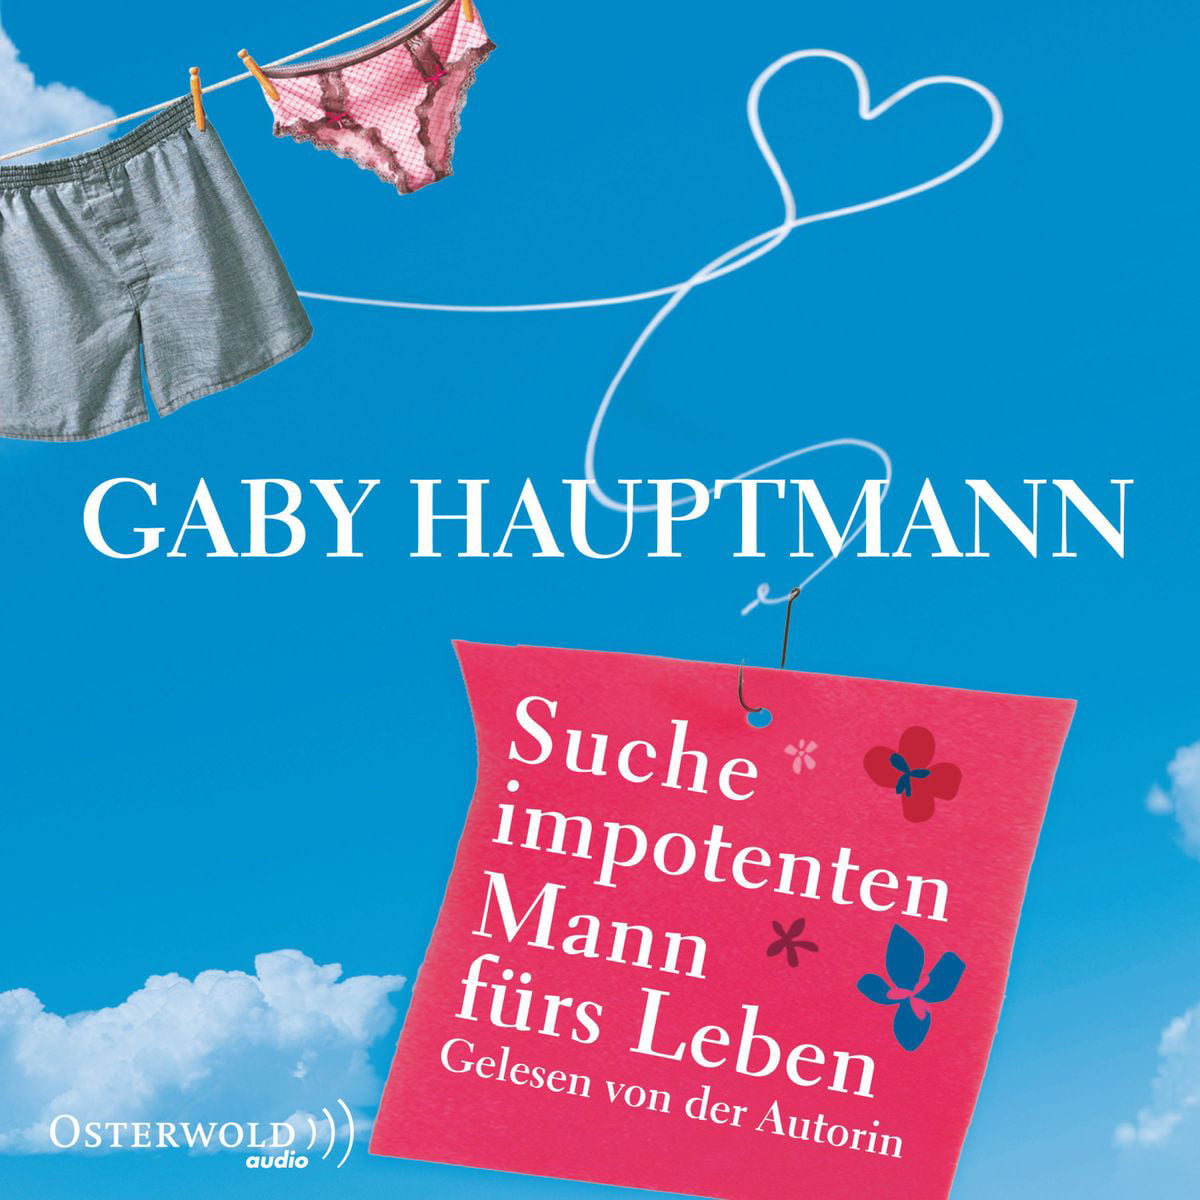 Buy Suche impotenten Mann fürs Leben - Audiobook at Walmart.com. 